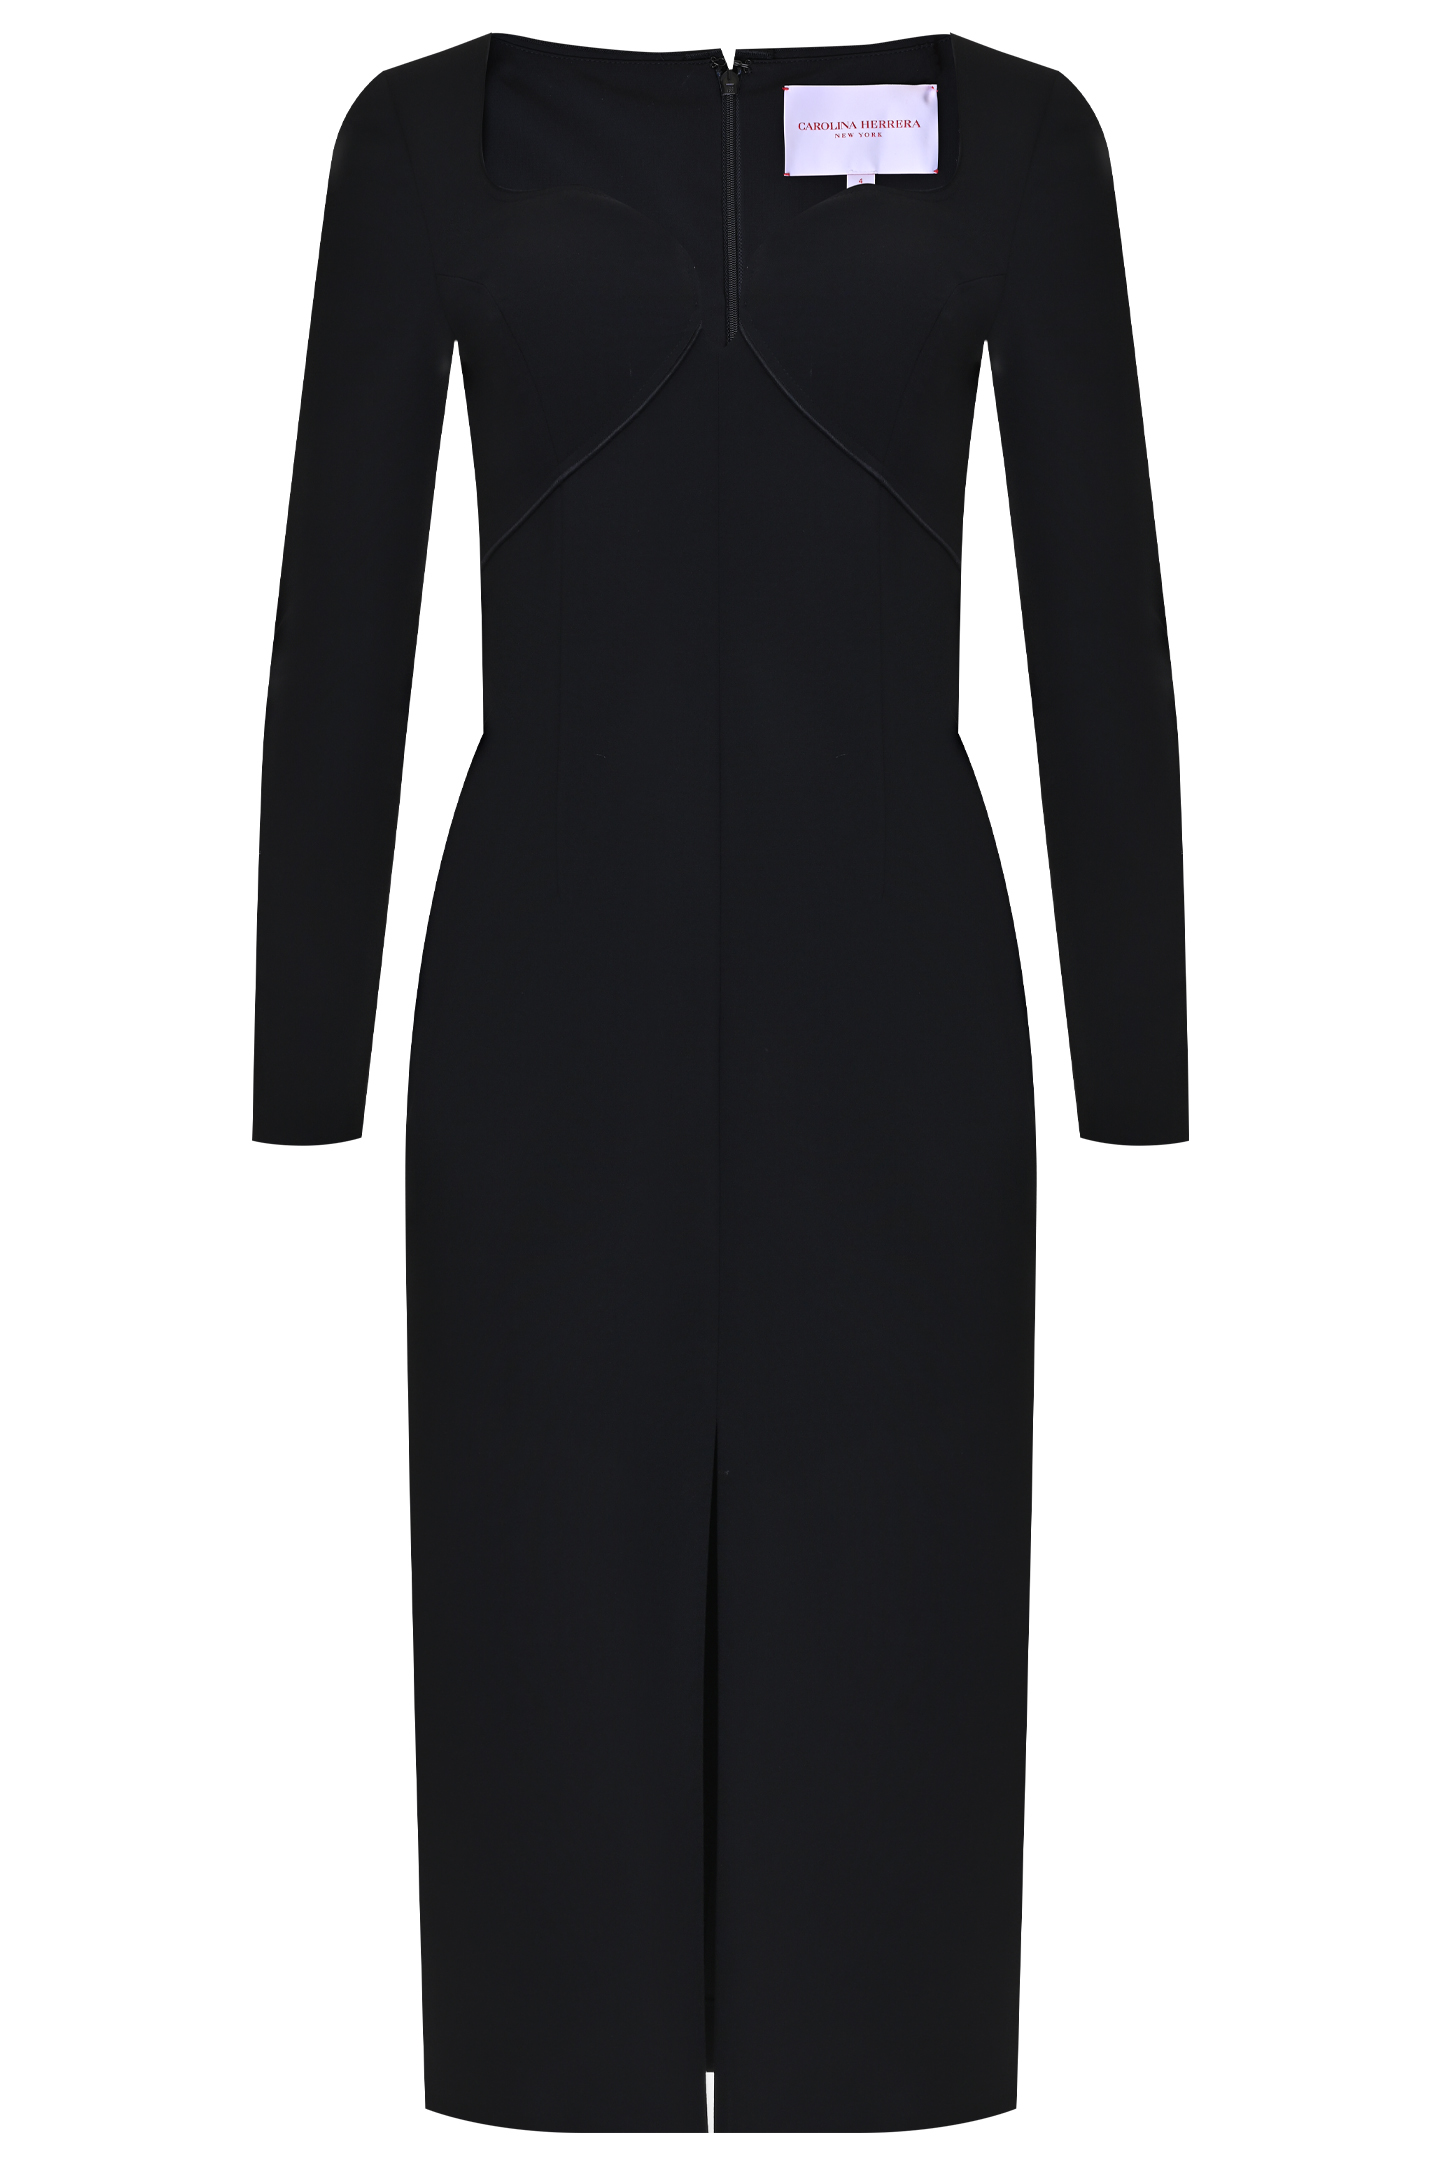 Платье CAROLINA HERRERA S2111N513, цвет: Черный, Женский